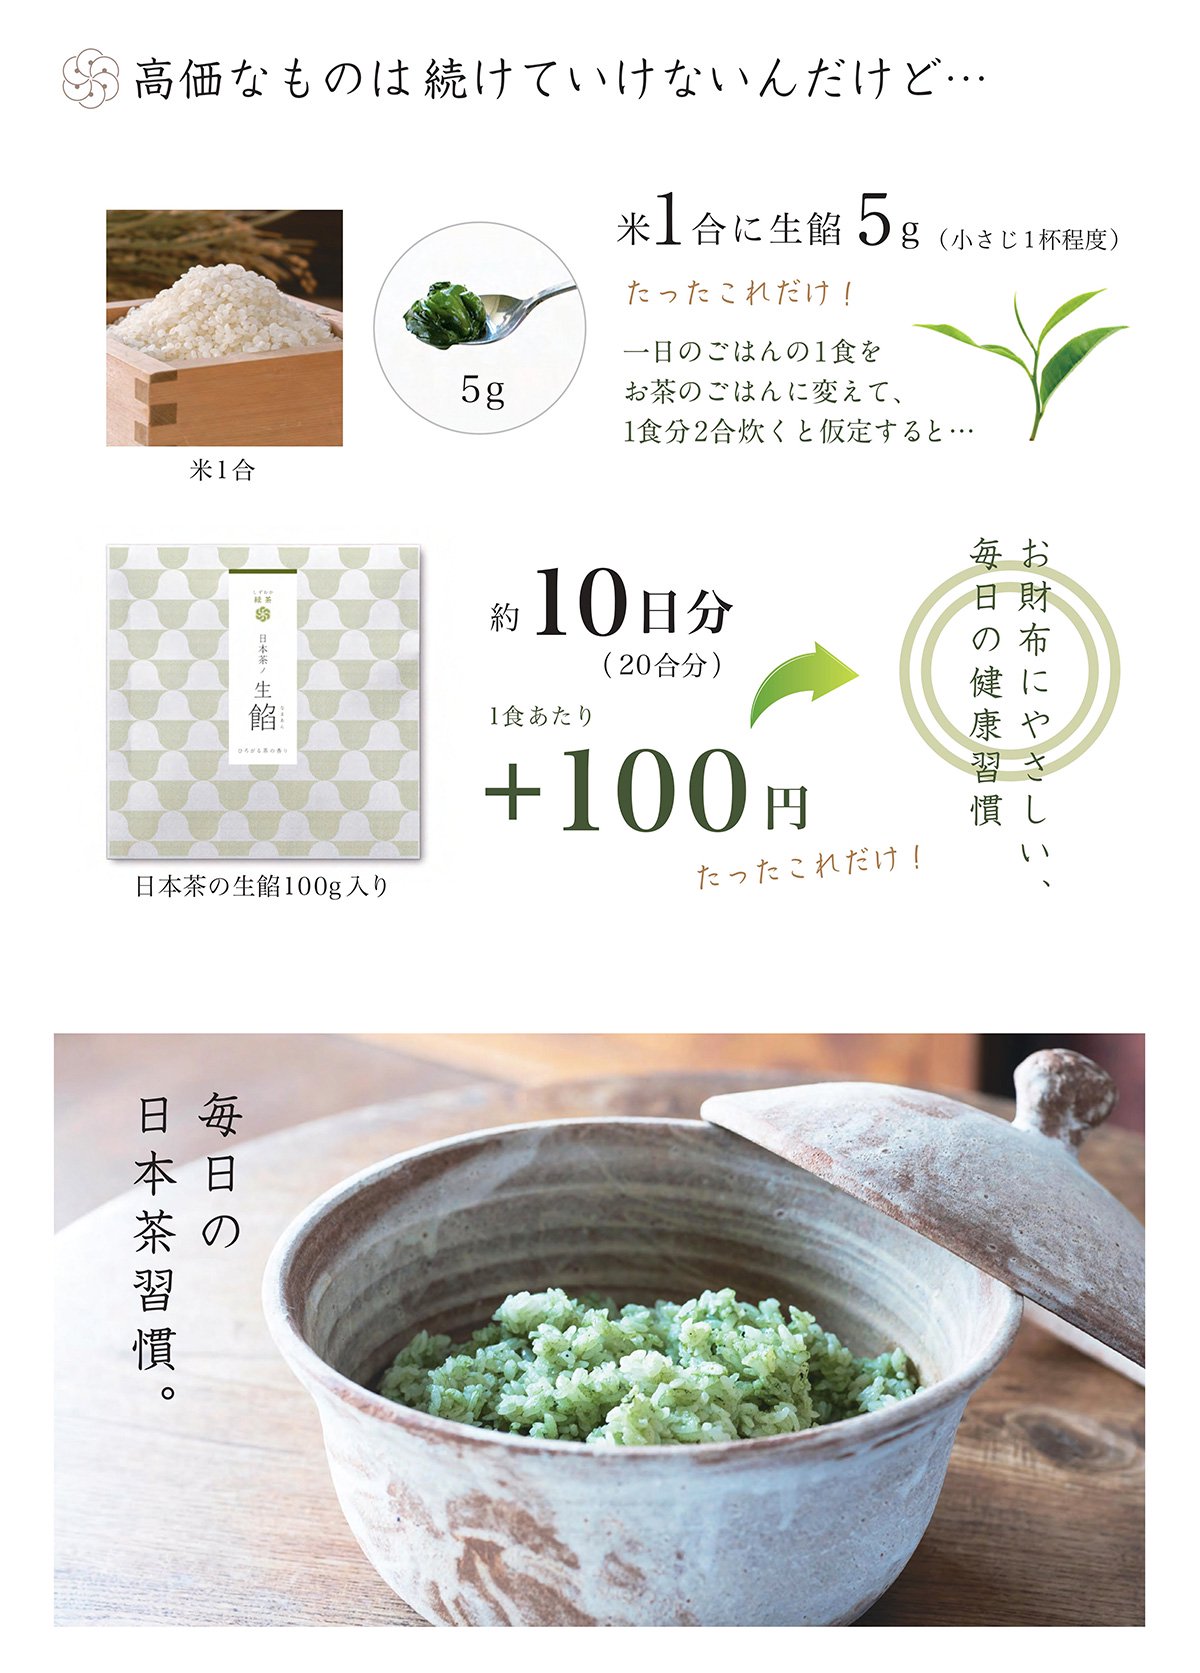 「お茶のペースト」日本茶ノ生餡の特徴、お茶の栄養をまるごと！おいしい日本茶研究所。